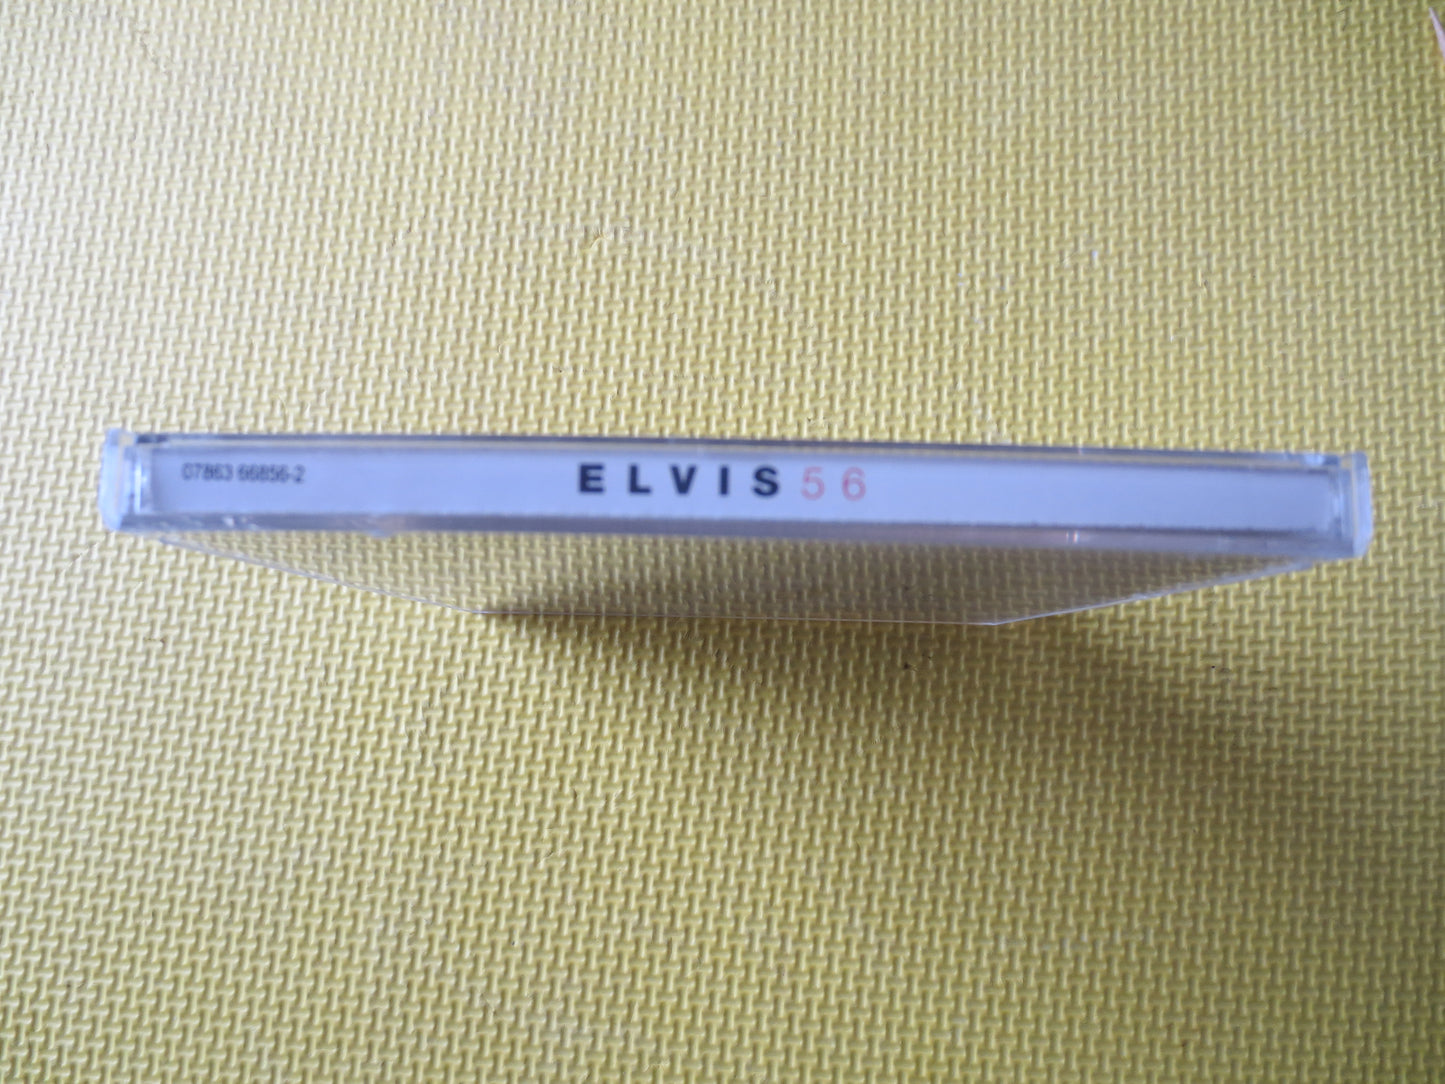 ELVIS PRESLEY, ELVIS '56, Elvis Presley Music, Elvis Presley Cd, Compact Discs, Elvis Cds, Elvis Songs, Cds, 1996 Compact Discs